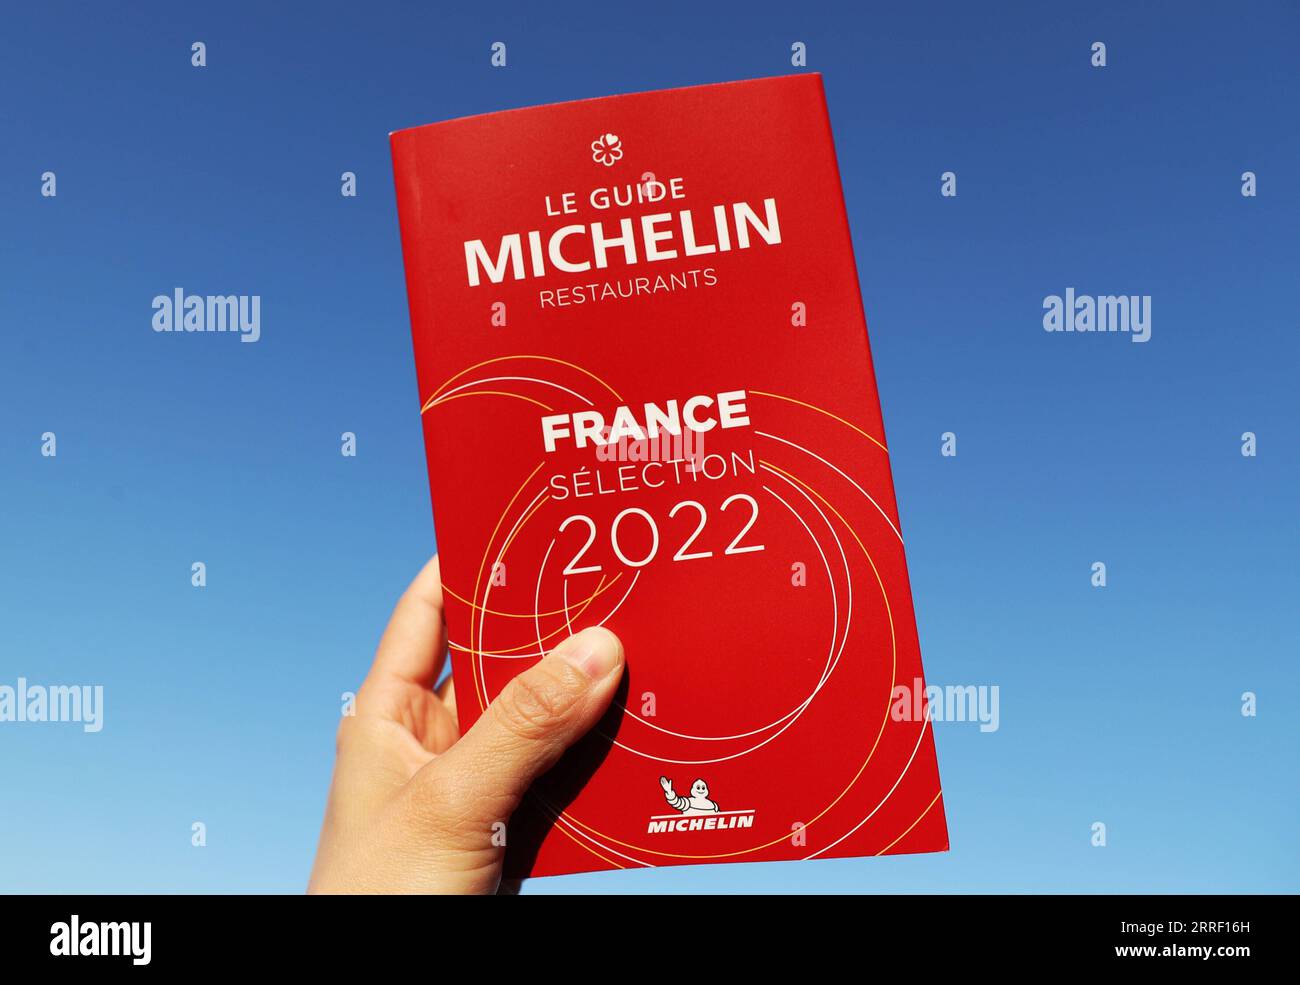 220323 -- COGNAC, 23. März 2022 -- Ein Michelin Guide France 2022 ist in Cognac, Frankreich, 23. März 2022 abgebildet. Der Michelin Guide startete seine Ausgabe 2022 am Dienstag in Cognac, das erste Mal seit 122 Jahren, dass die Zeremonie außerhalb von Paris stattfand. Zwei Restaurants wurden mit der höchsten Auszeichnung von drei Sternen ausgezeichnet. FRANKREICH-COGNAC-MICHELIN-PREISVERLEIHUNG GAOXJING PUBLICATIONXNOTXINXCHN Stockfoto